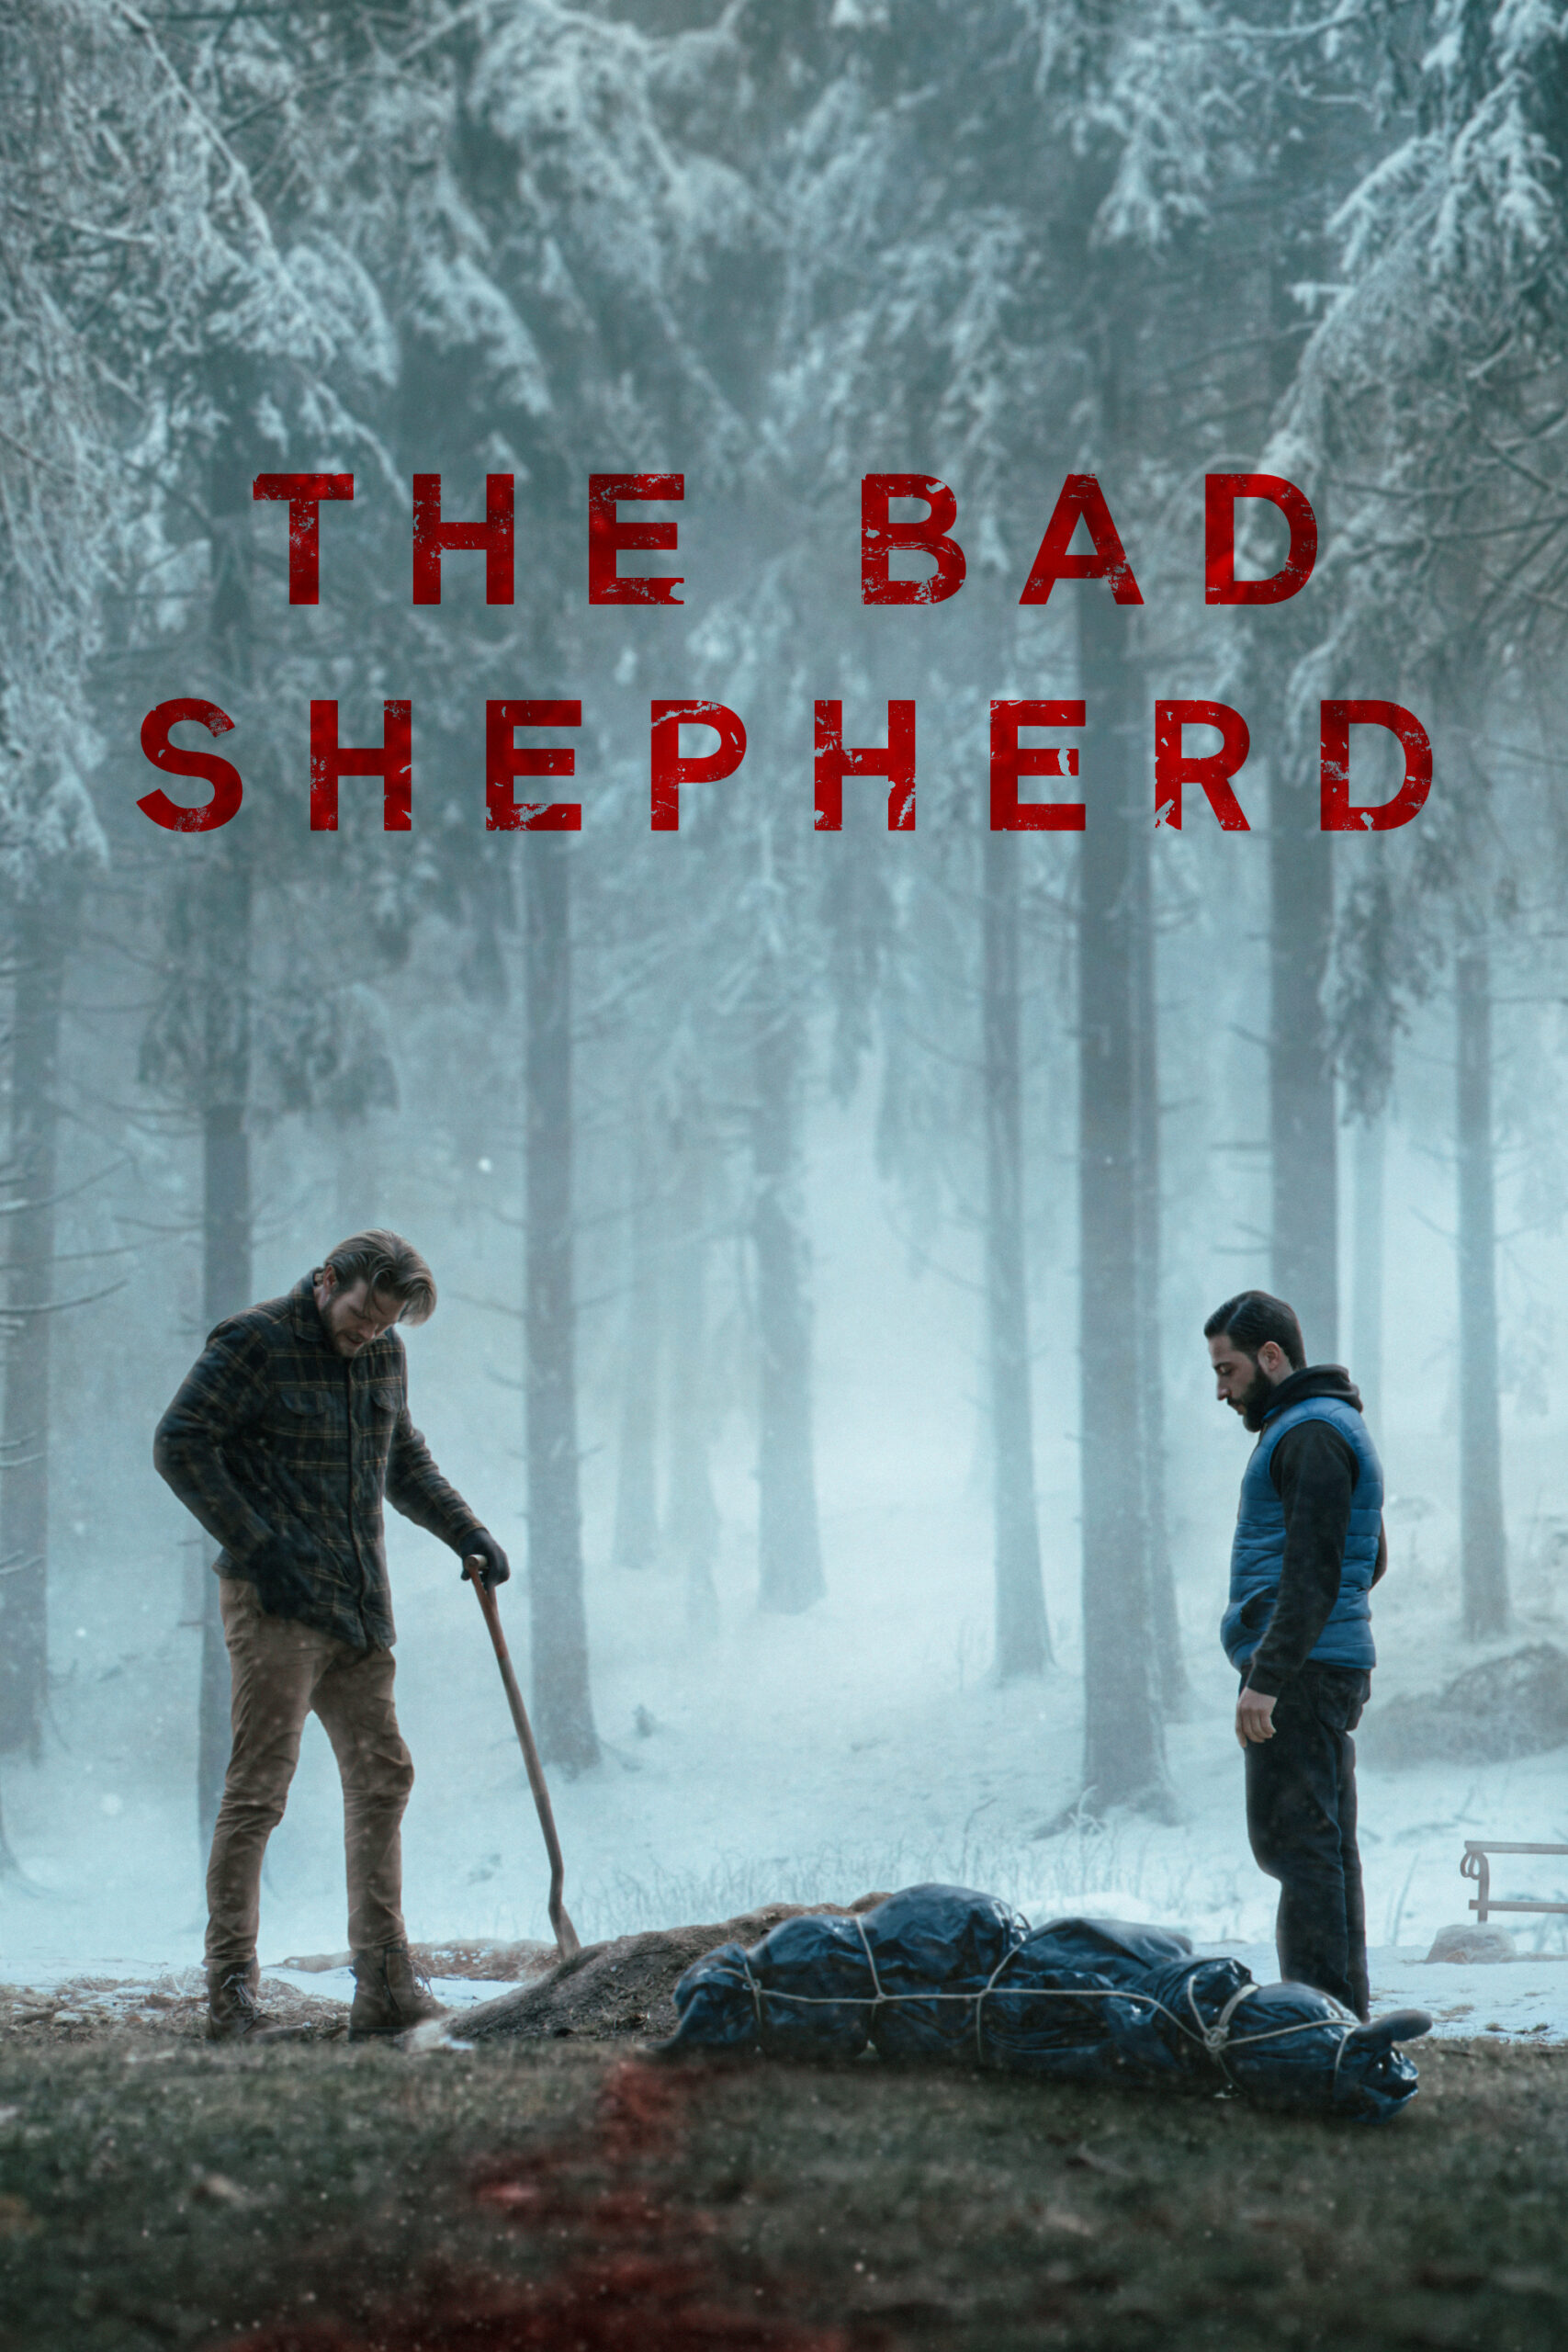 The Bad Shepherd